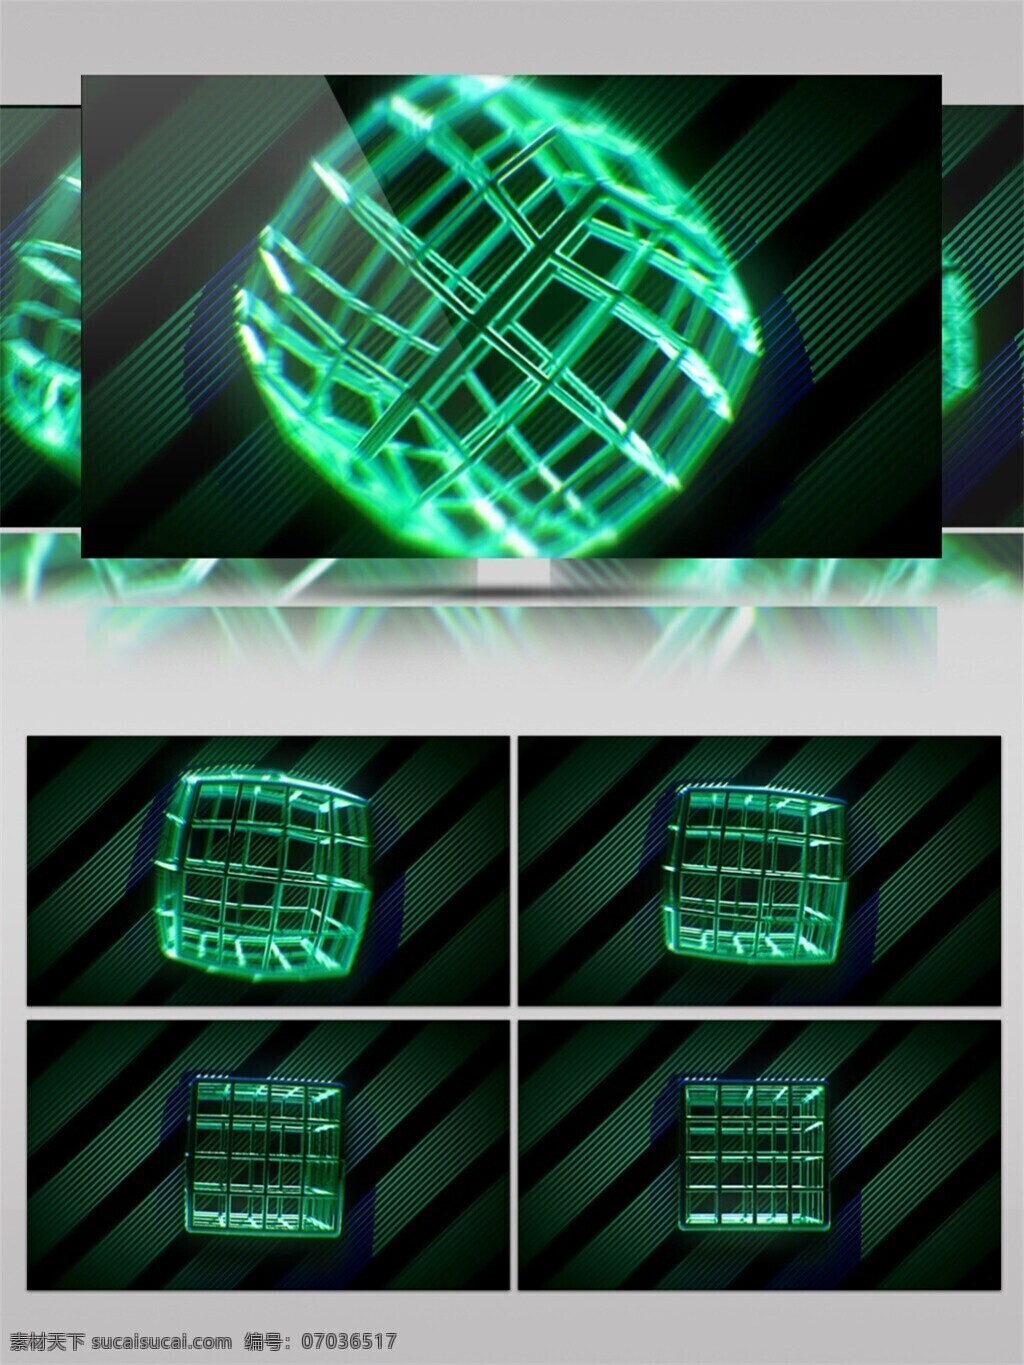 绿色 方块 笼子 视频 3d视频素材 特效视频素材 背景视频素材